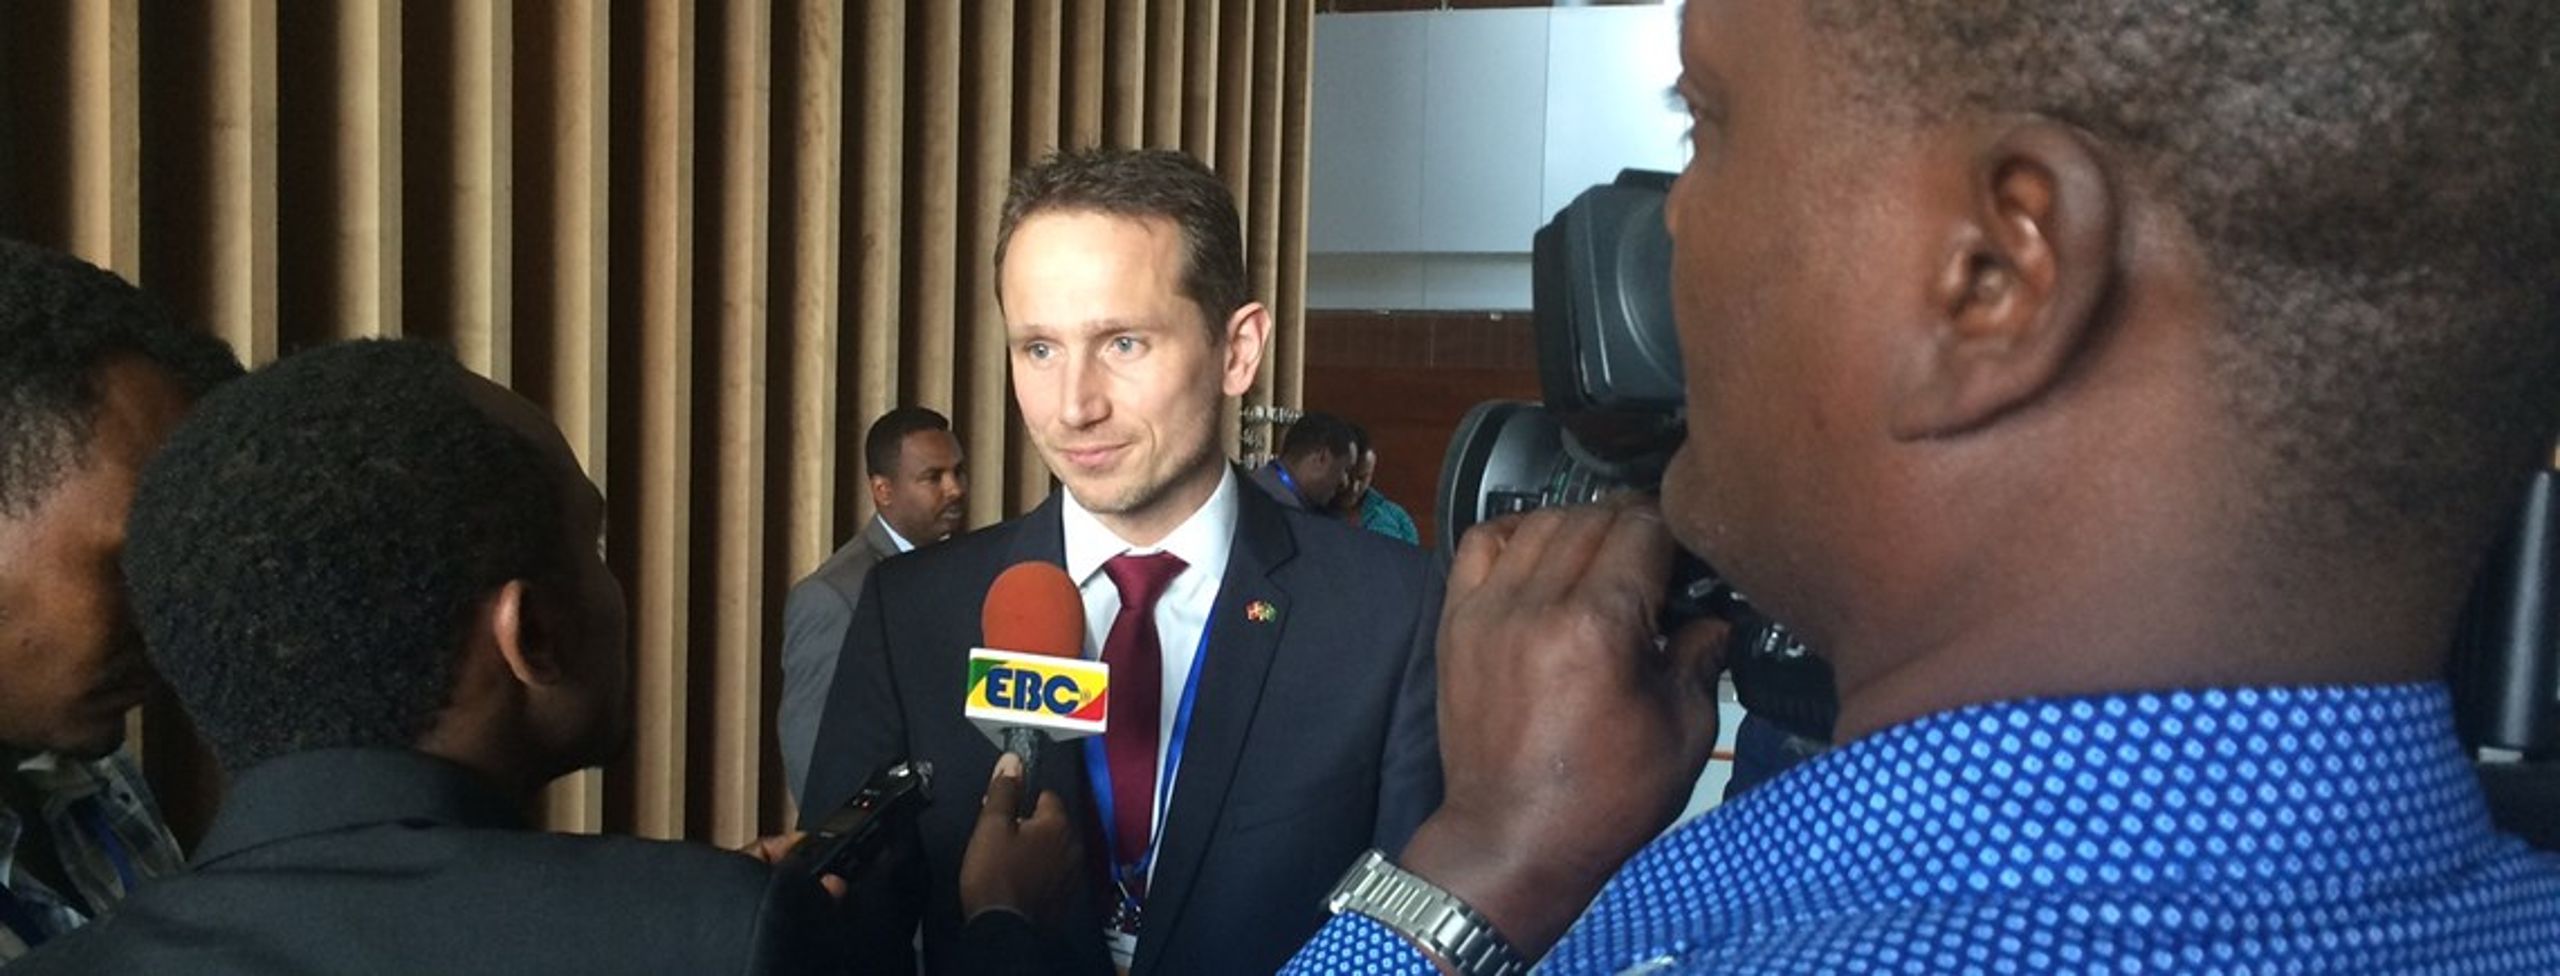 Udenrigsminister Kristian Jensen (V) tog i ugen til AU-topmøde i Etiopien for at diskutere migration.&nbsp;